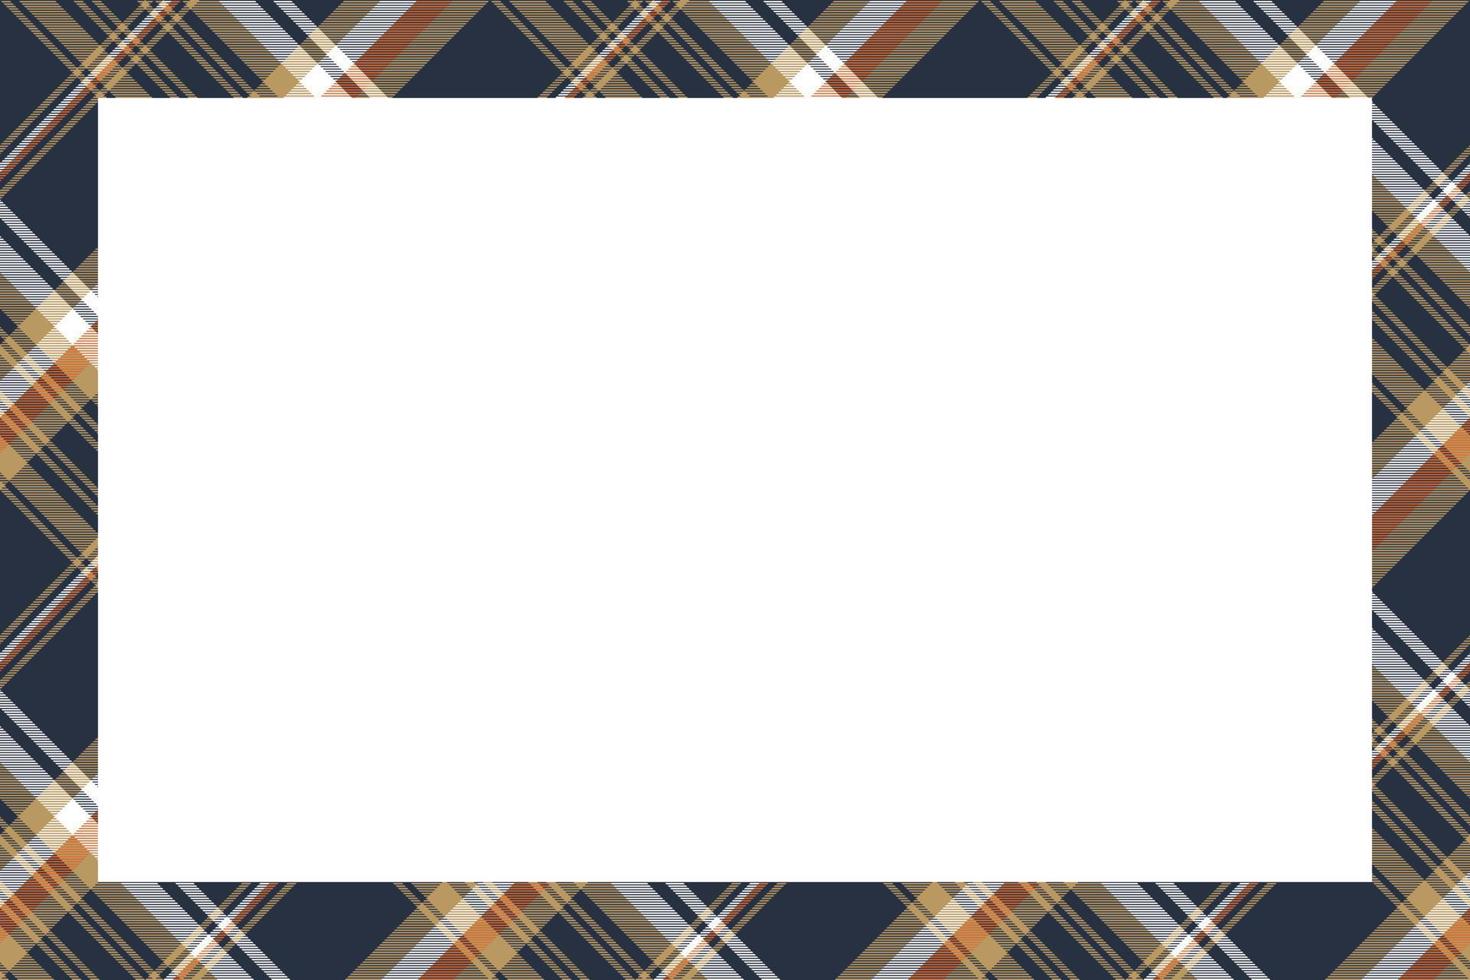 vetor de bordas e molduras de retângulo. fronteira geométrica design de moldura vintage. textura de tecido xadrez tartan escocês. modelo para cartão de presente, colagem, álbum de recortes ou foto e retrato.